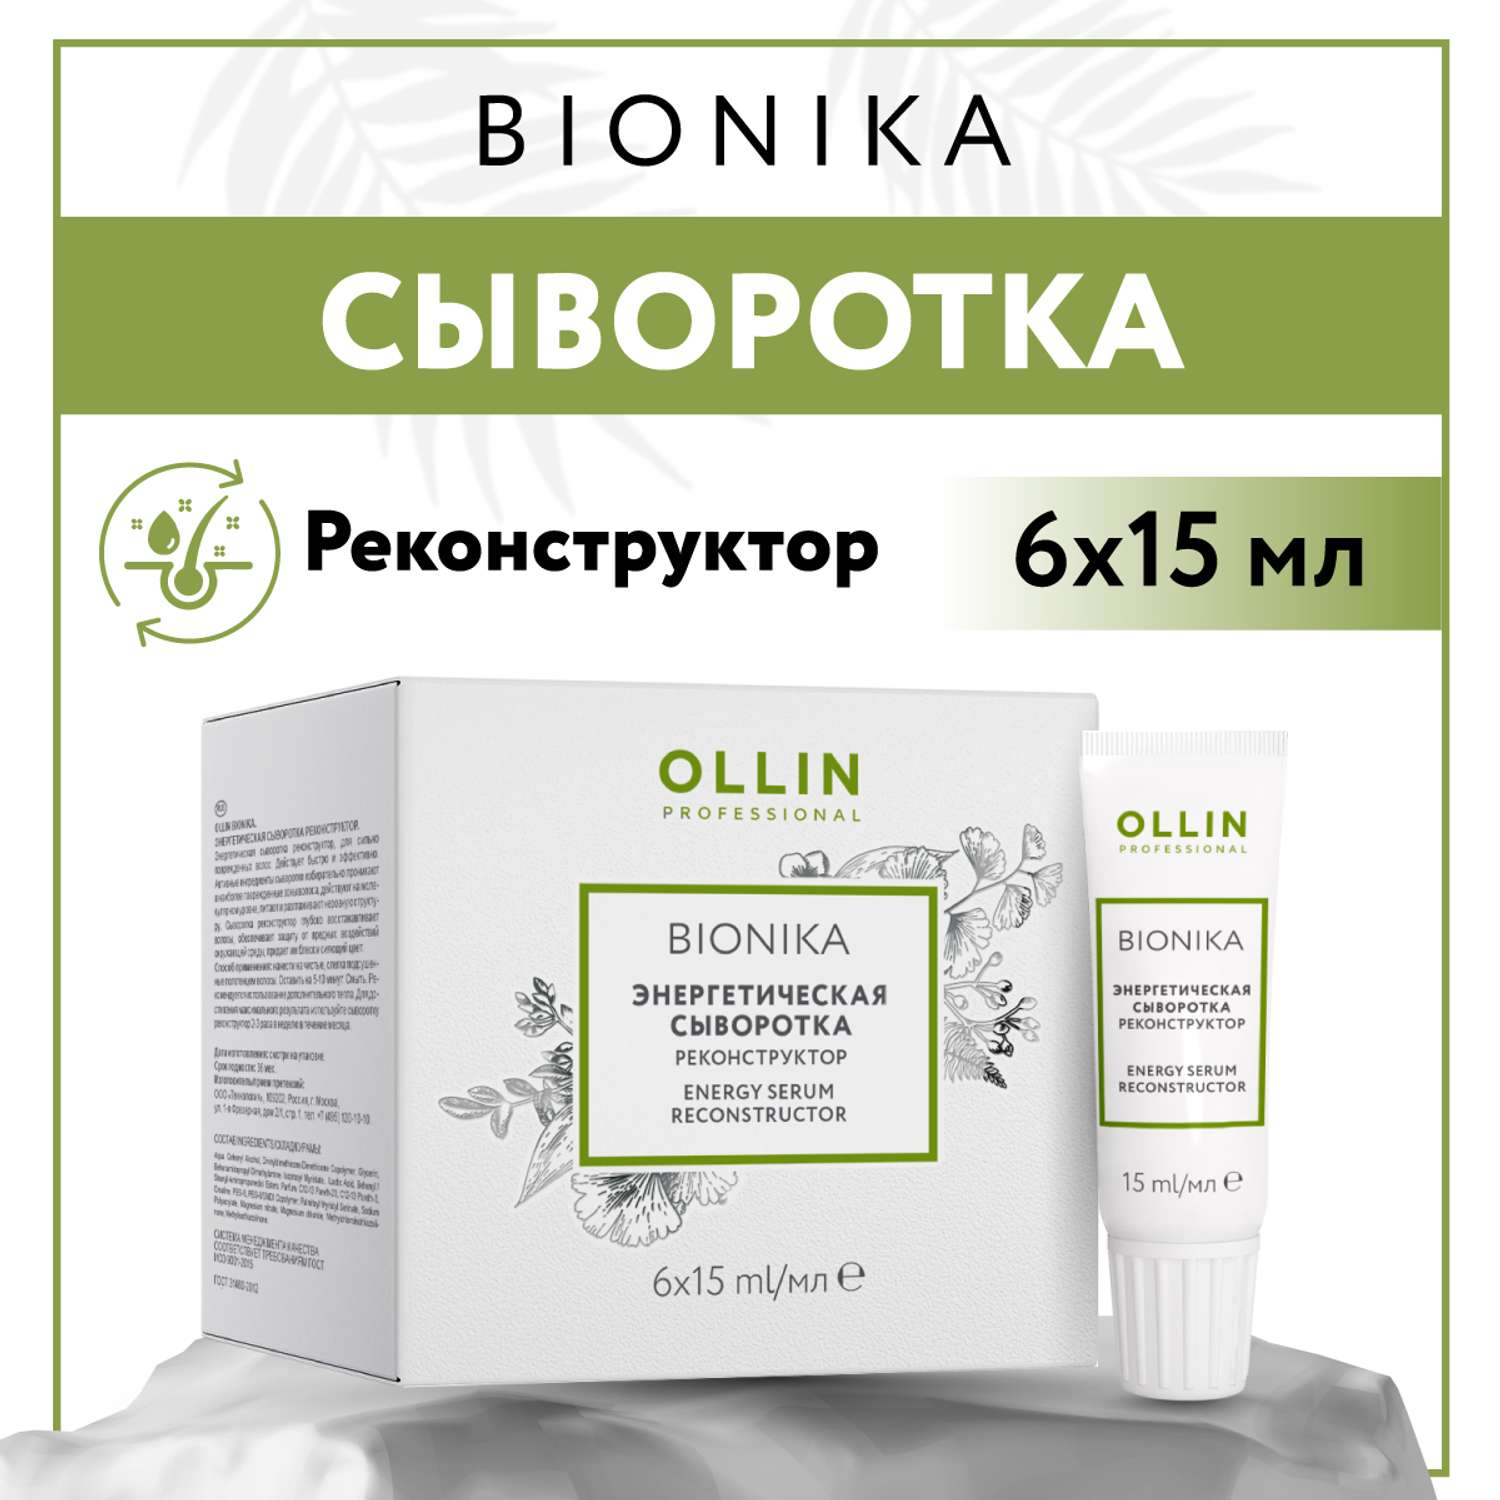 Сыворотка Ollin BIONIKA для восстановления волос реконструктор энергетическая 6*15 мл - фото 2